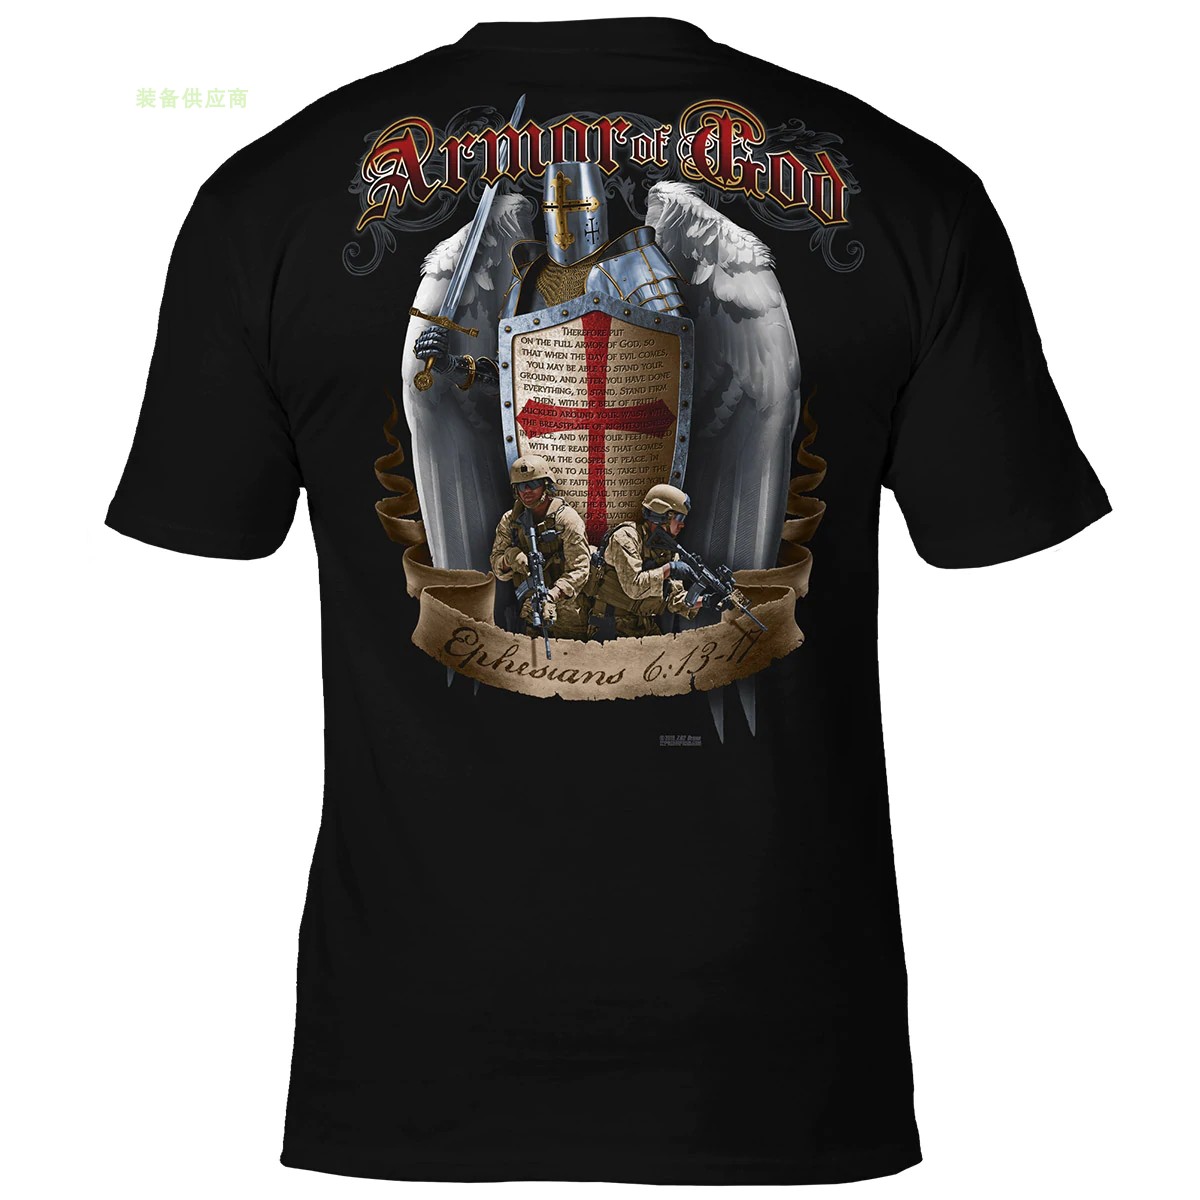 美国7.62 Design 神的军装 以弗所书 美军授权军事T恤